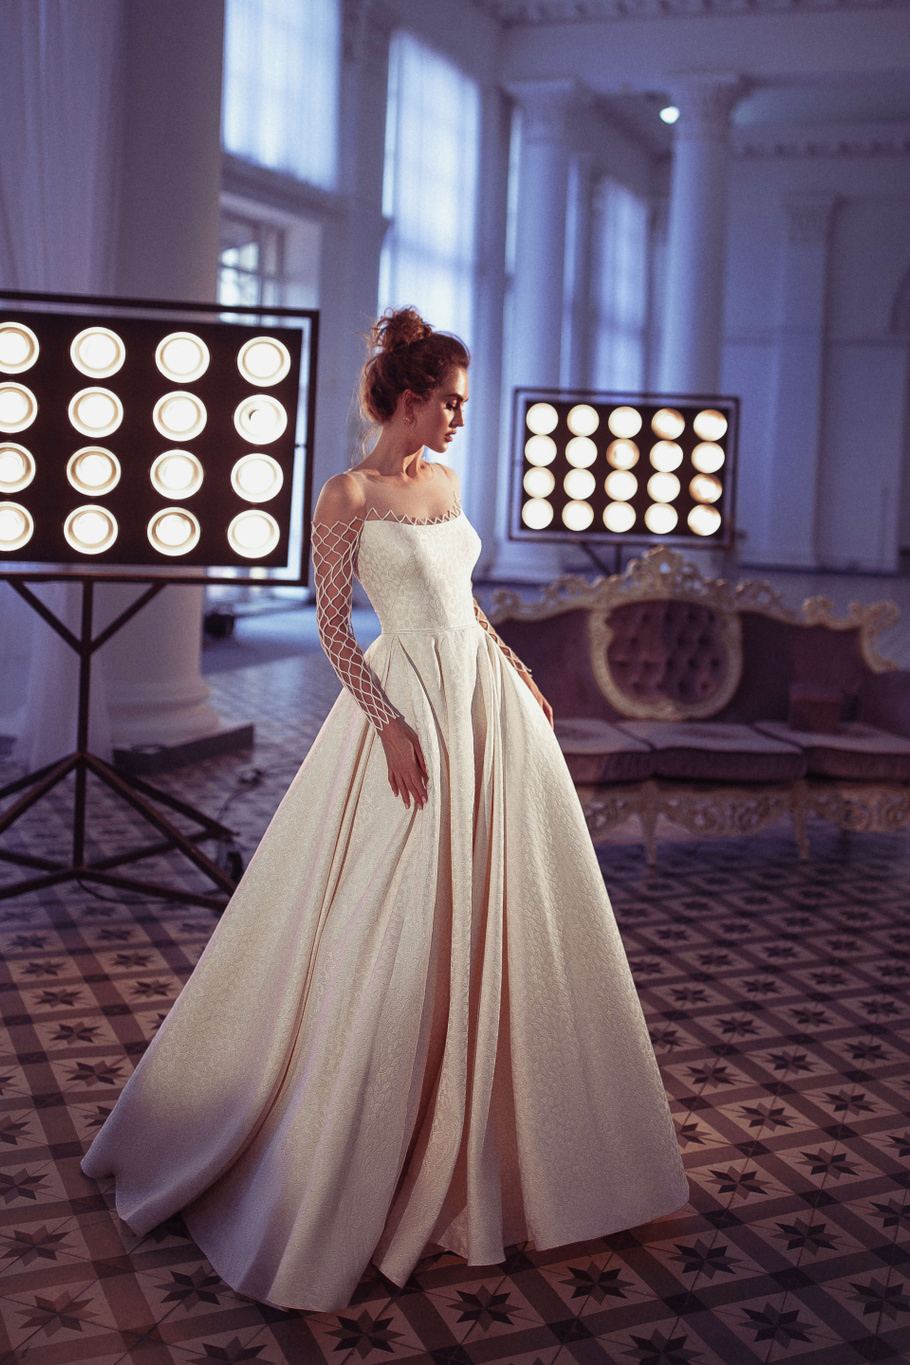 Купить свадебное платье «Илаитис» Бламмо Биамо из коллекции Свит Лайф 2021 года в Санкт-Петербурге